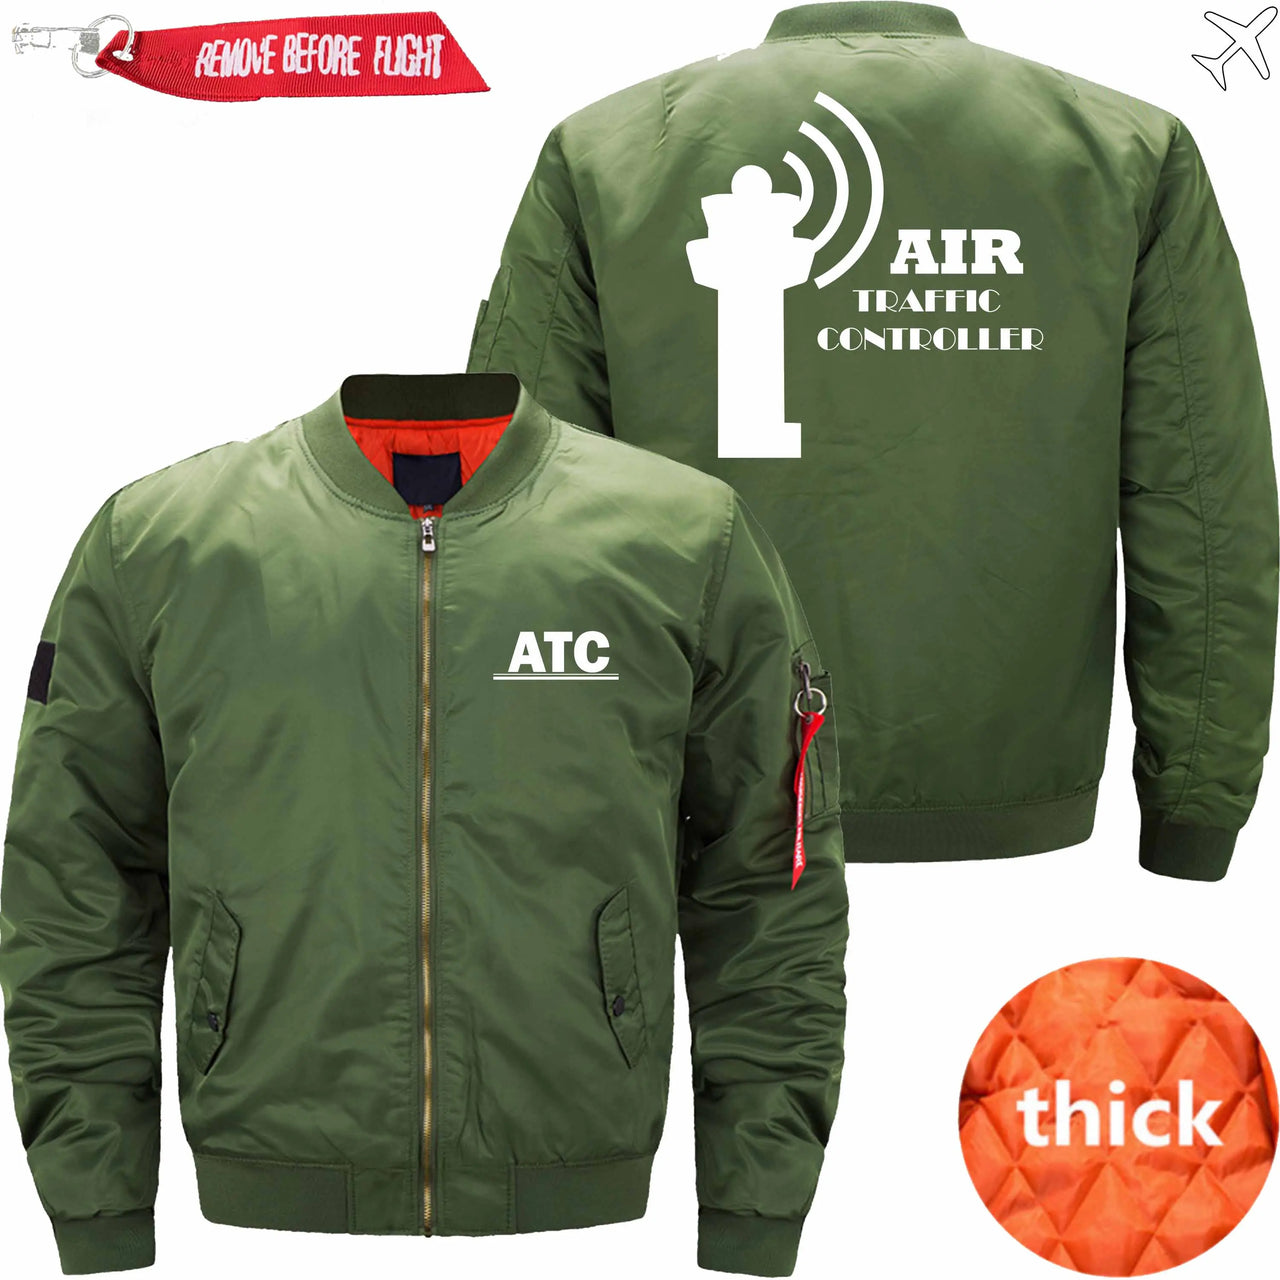 AIR TRAFFIC CONTROLLER - JACKET THE AV8R